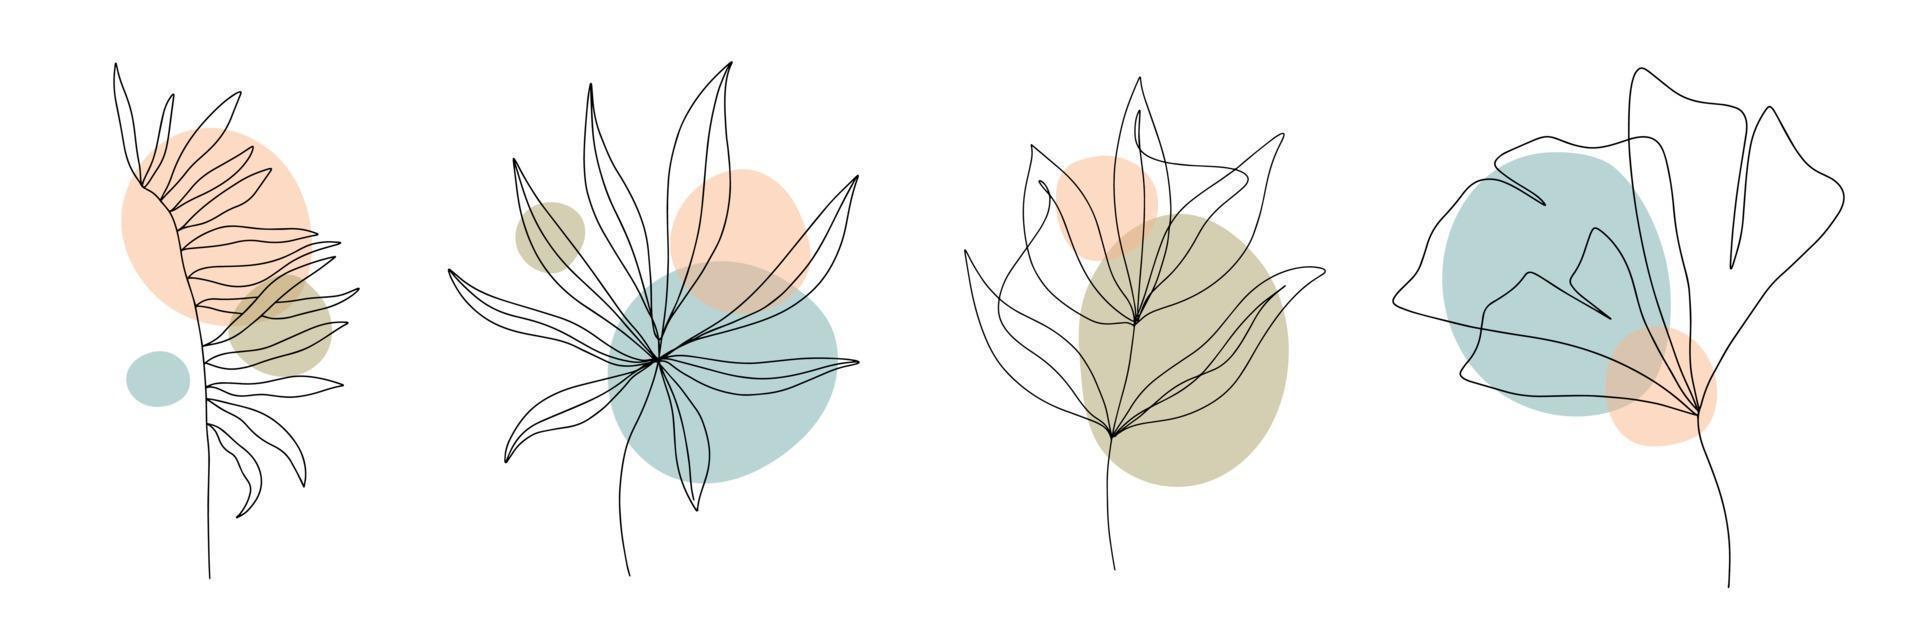 formas geométricas contemporáneas abstractas, hojas y flores vector